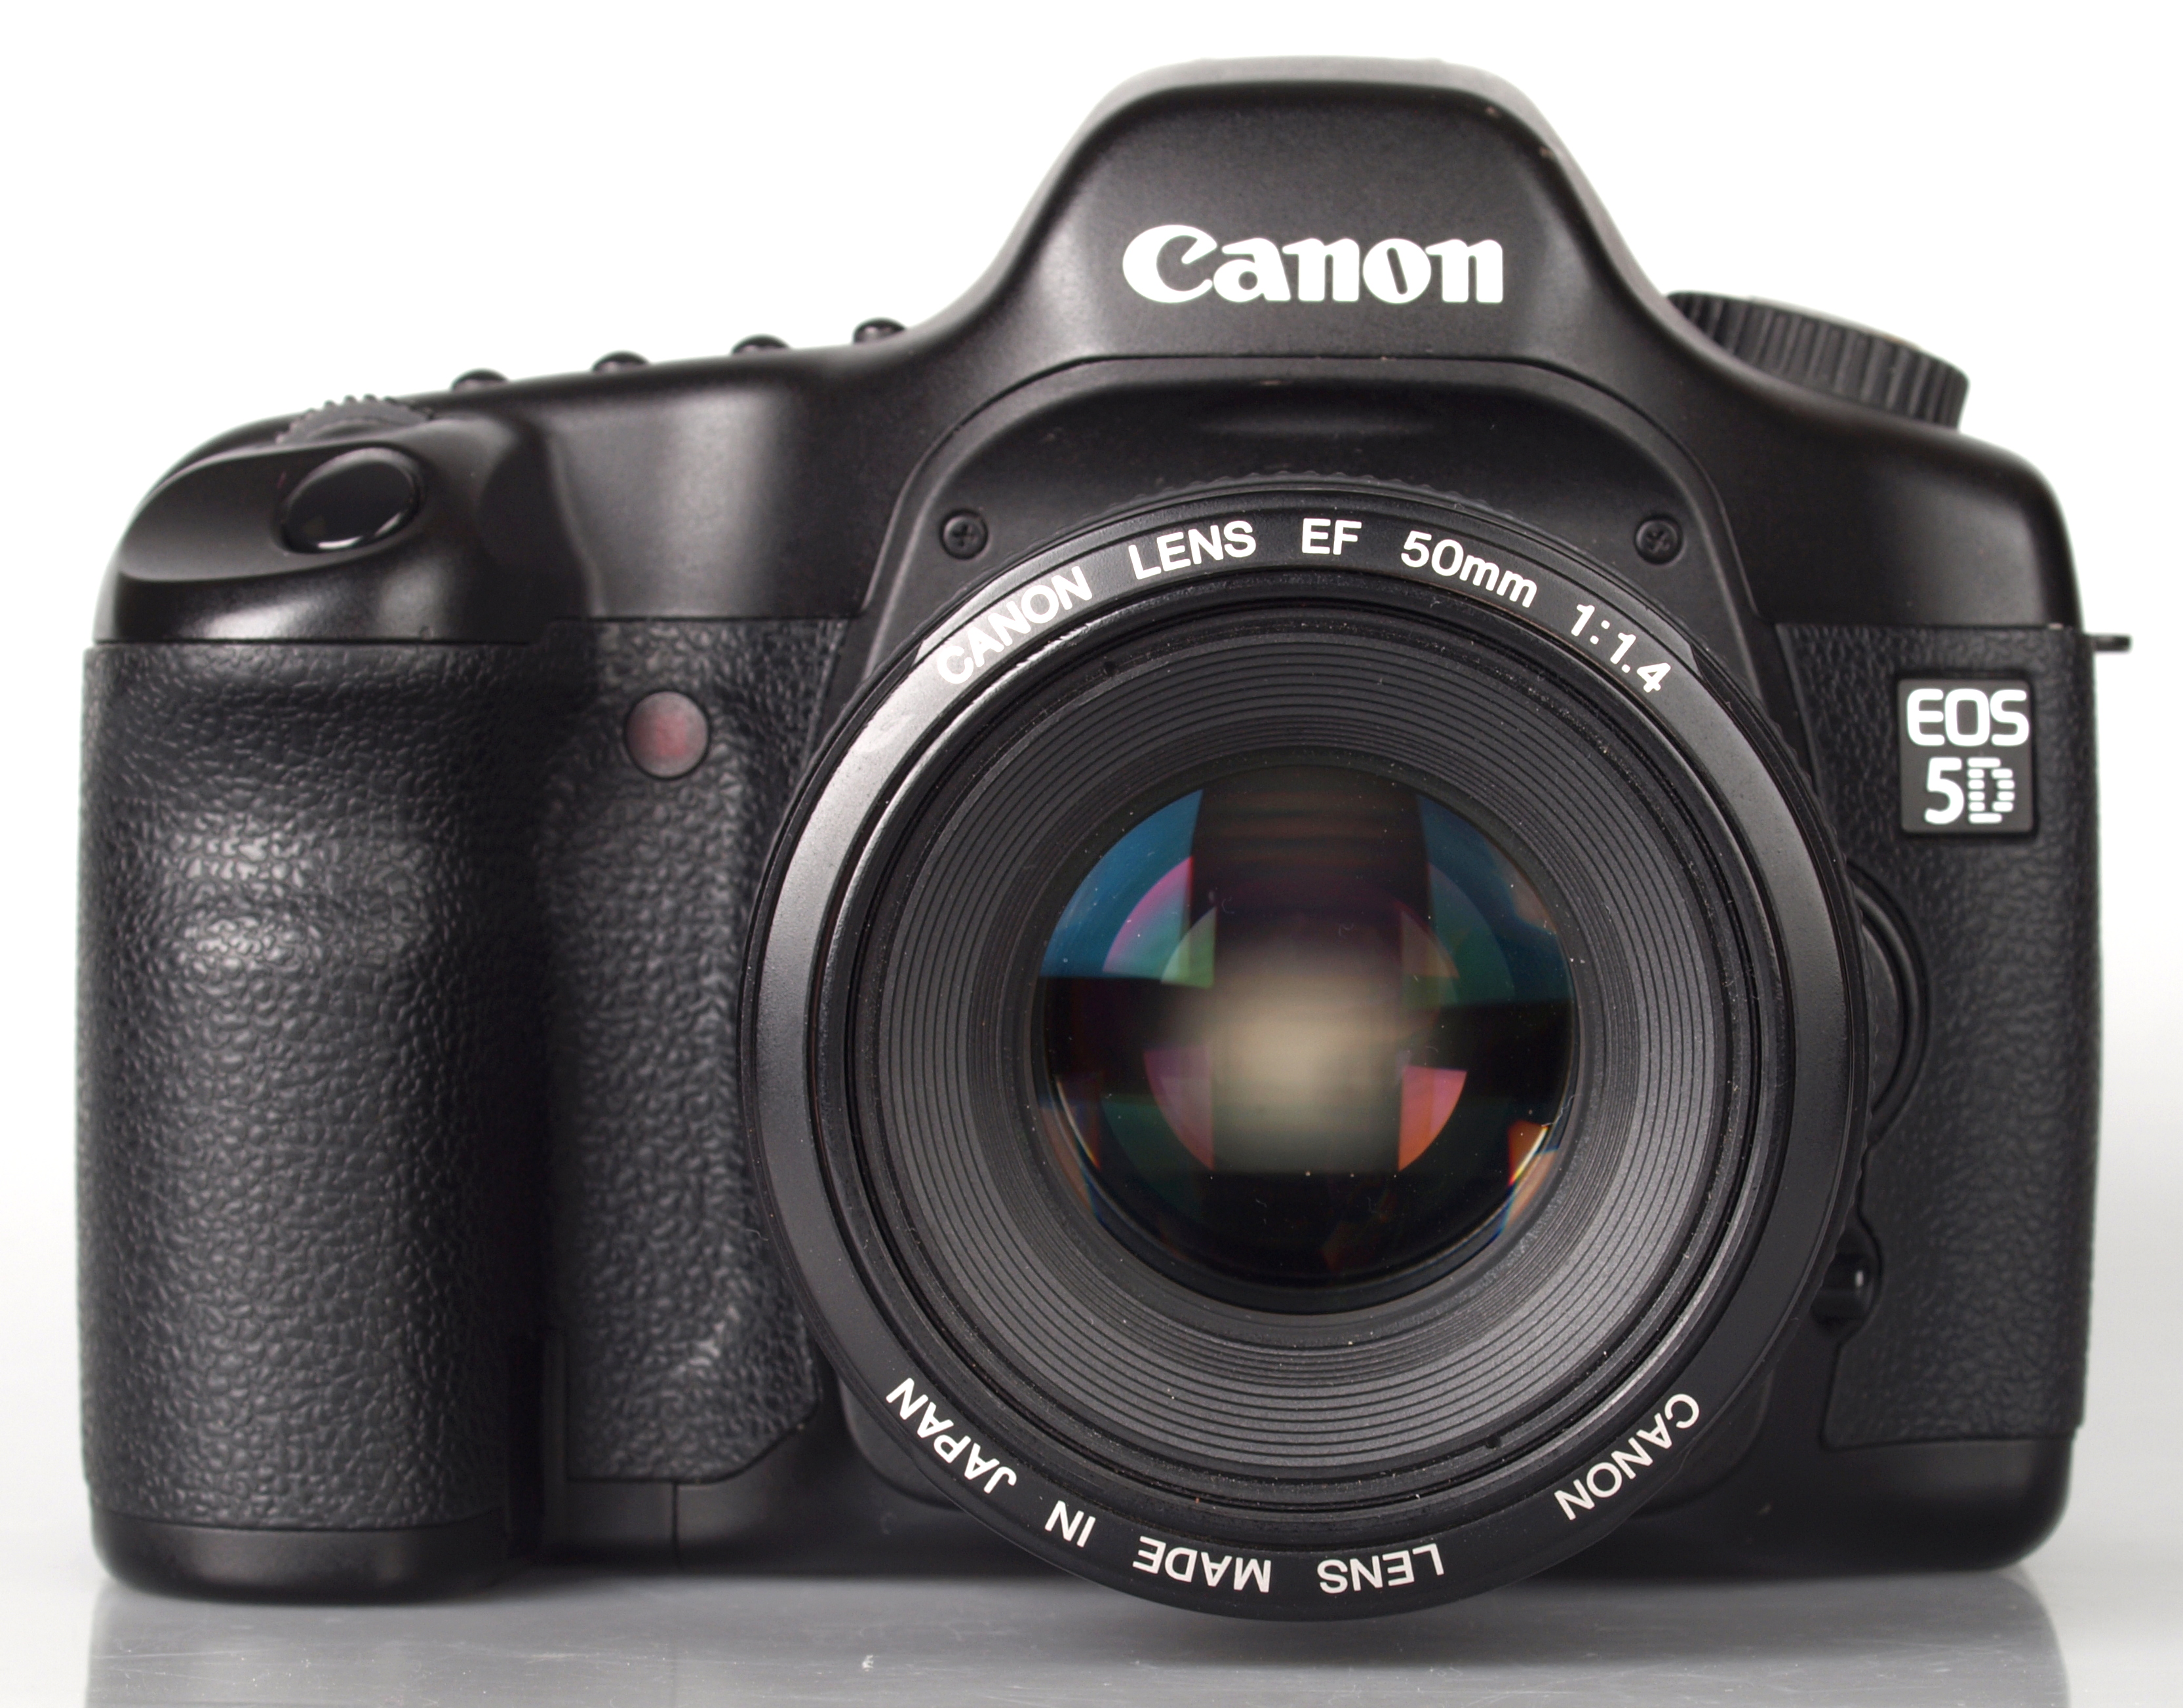 Canon EOS 5D Digital SLR Review